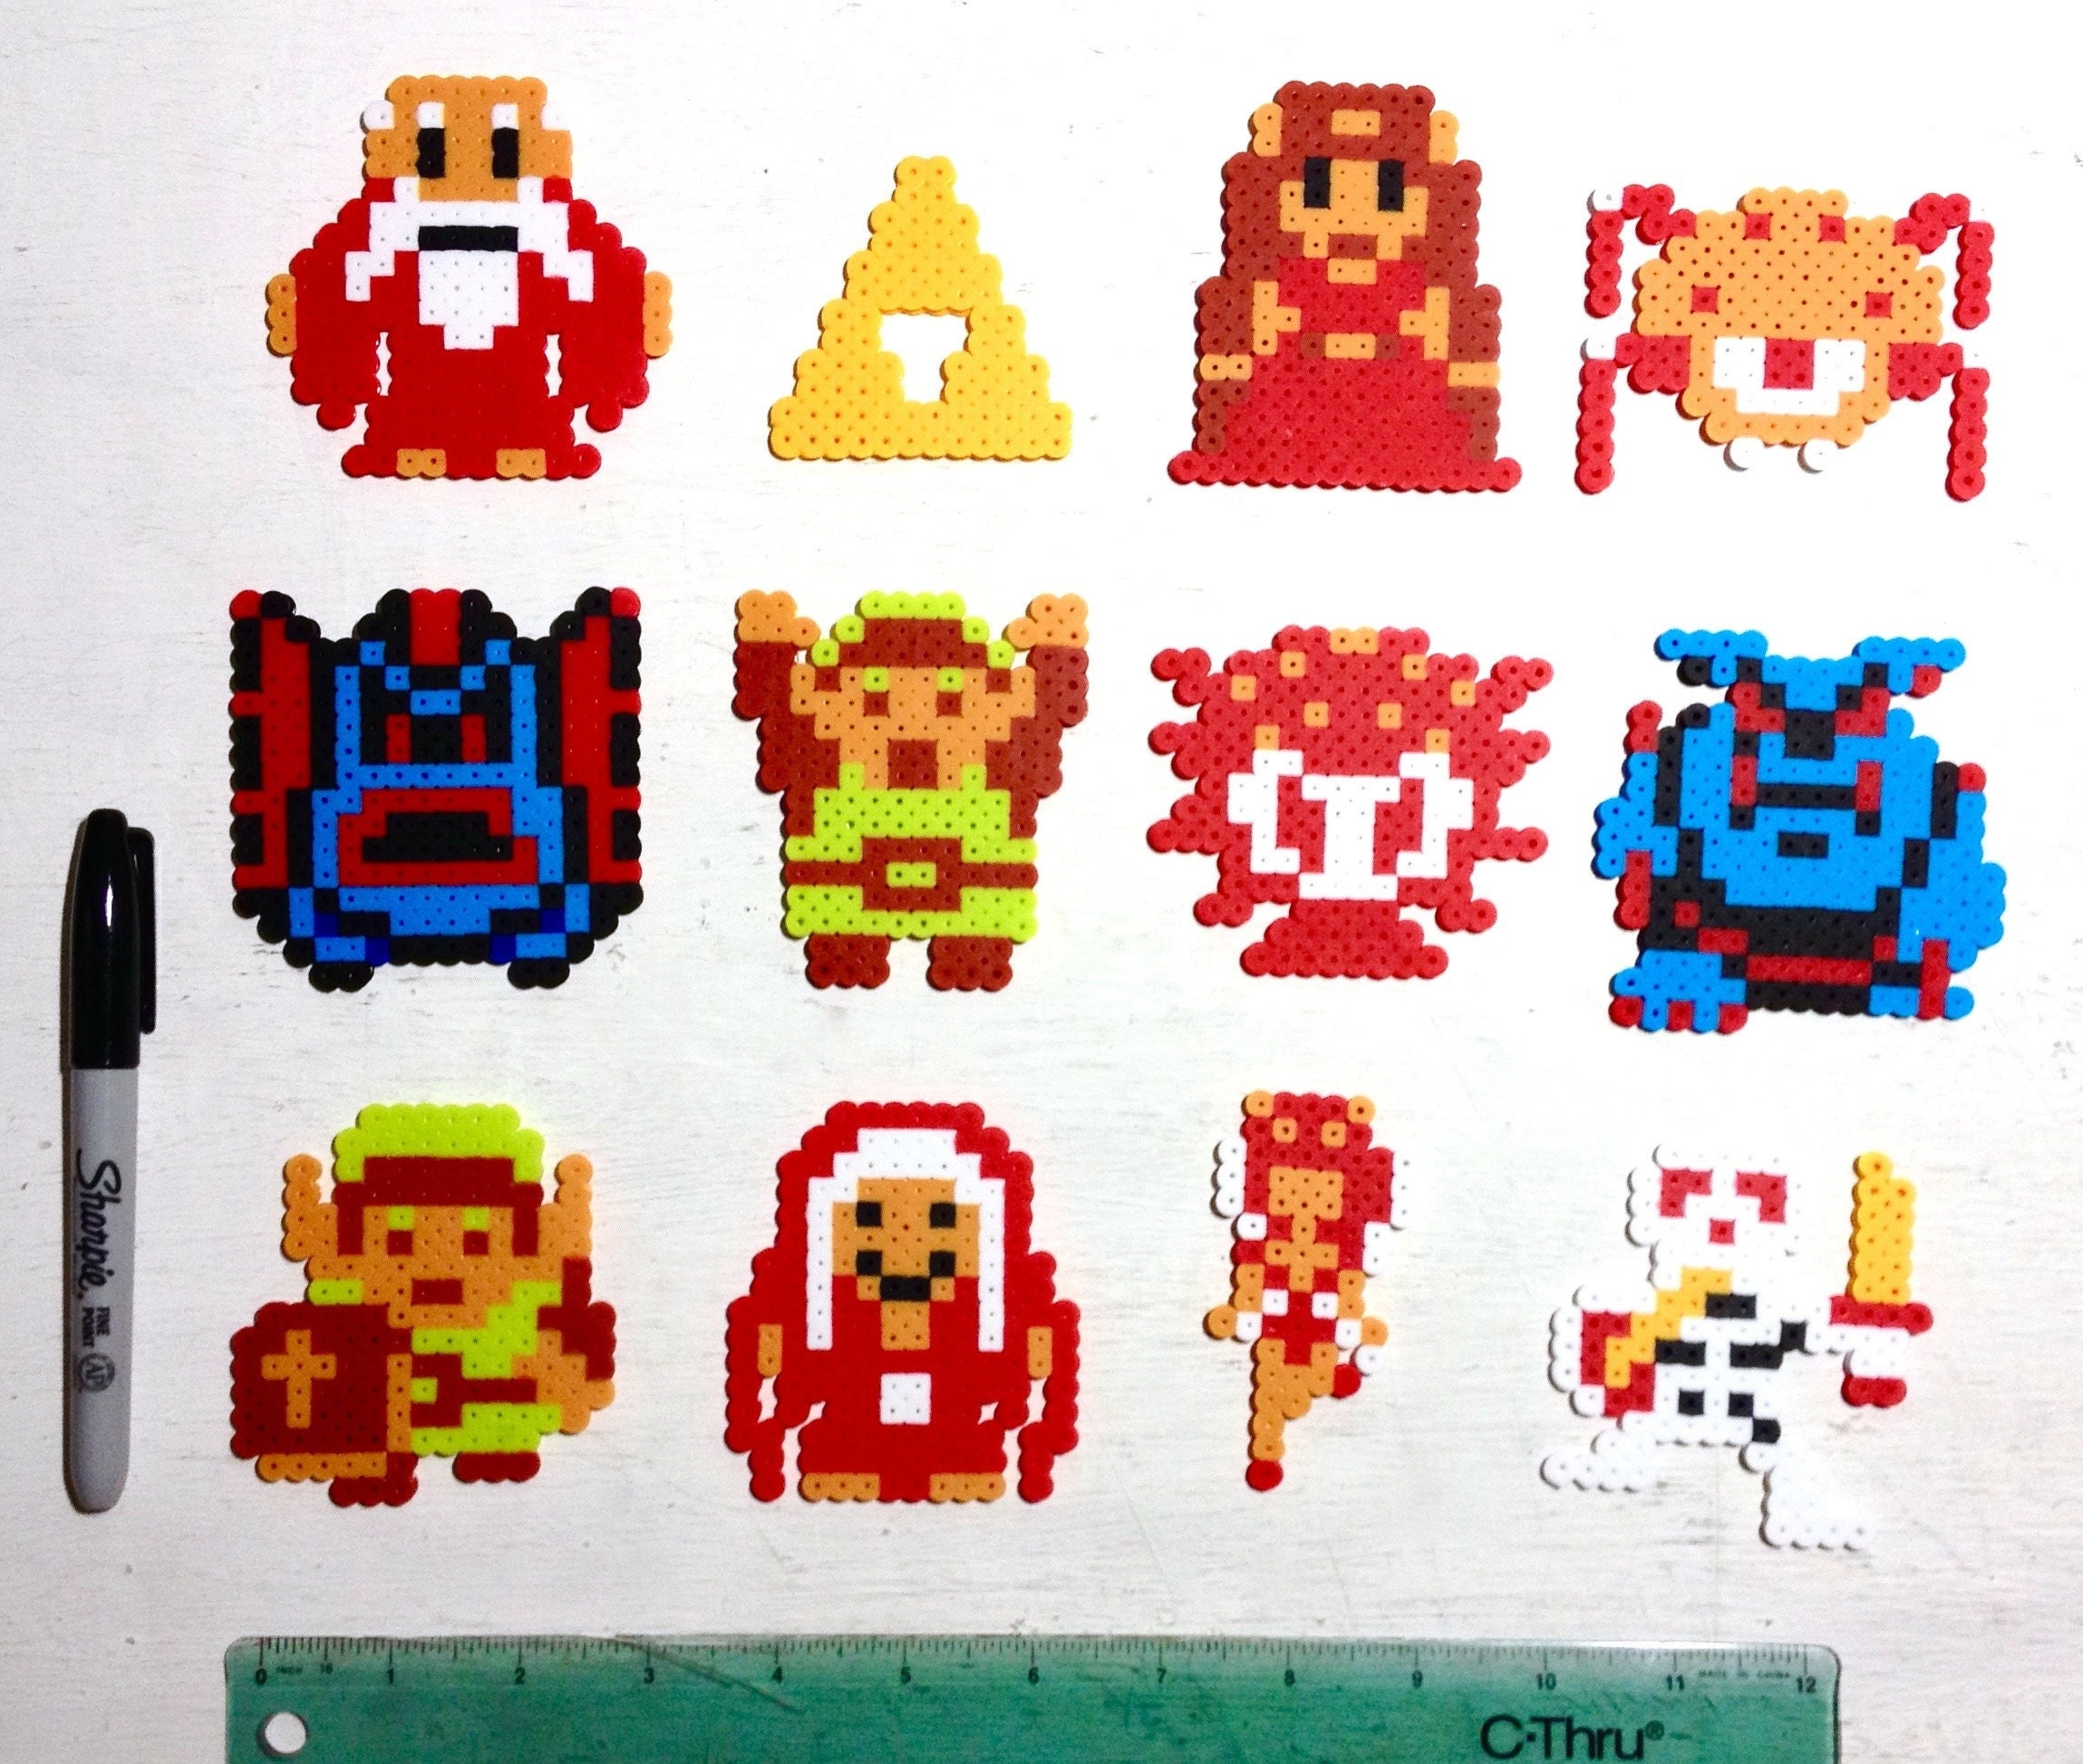 Legend of Zelda Link 8bit Bead Pixel Art!